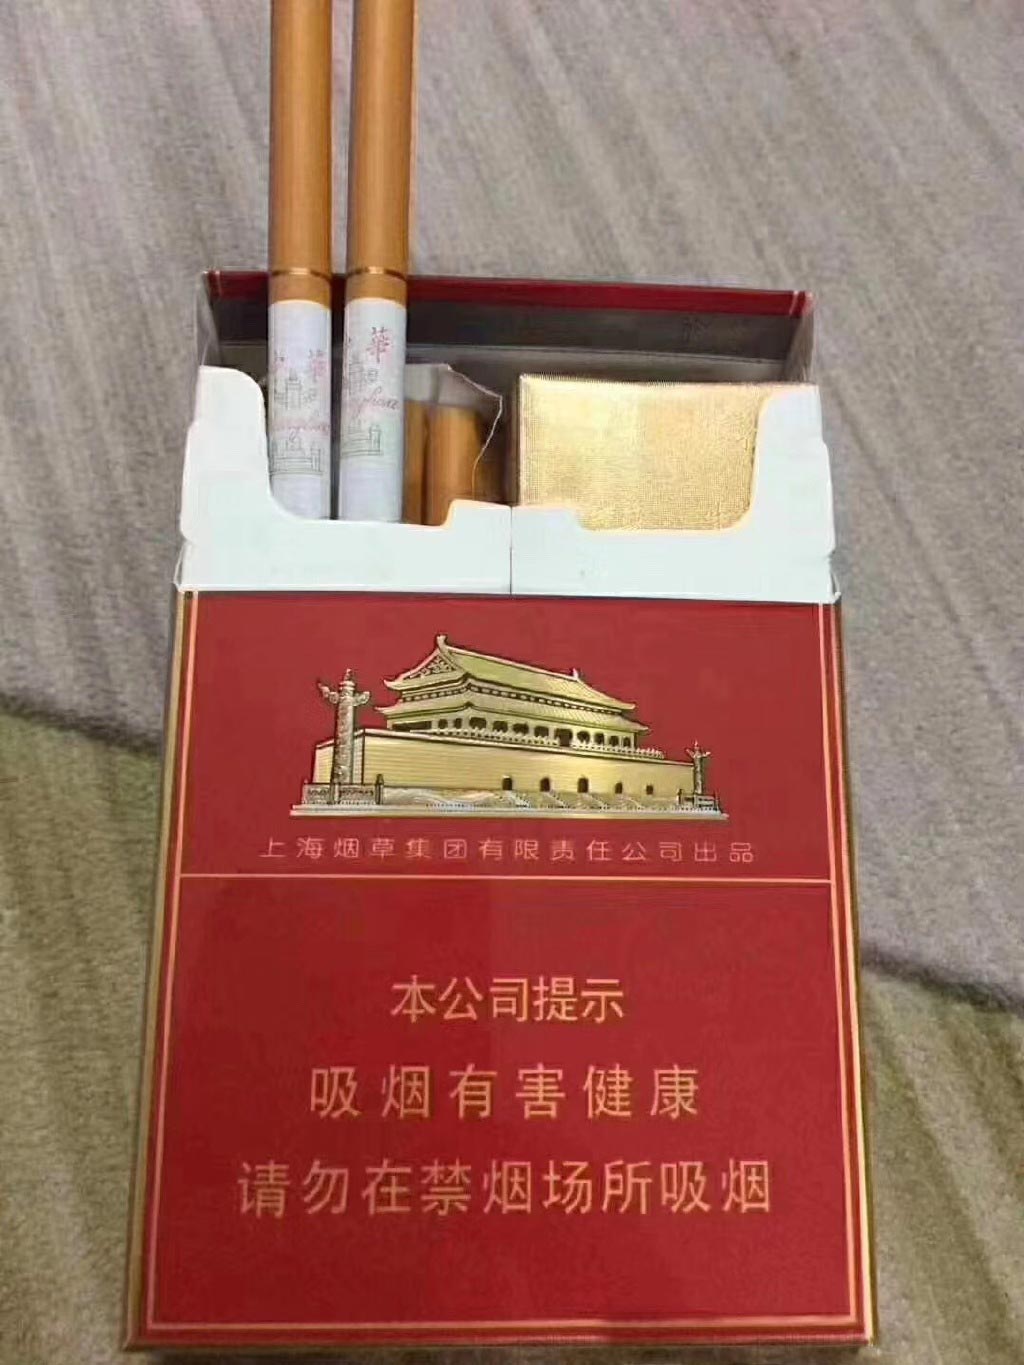 香烟货源-全网最全香烟货源-微信香烟货源扣货包补